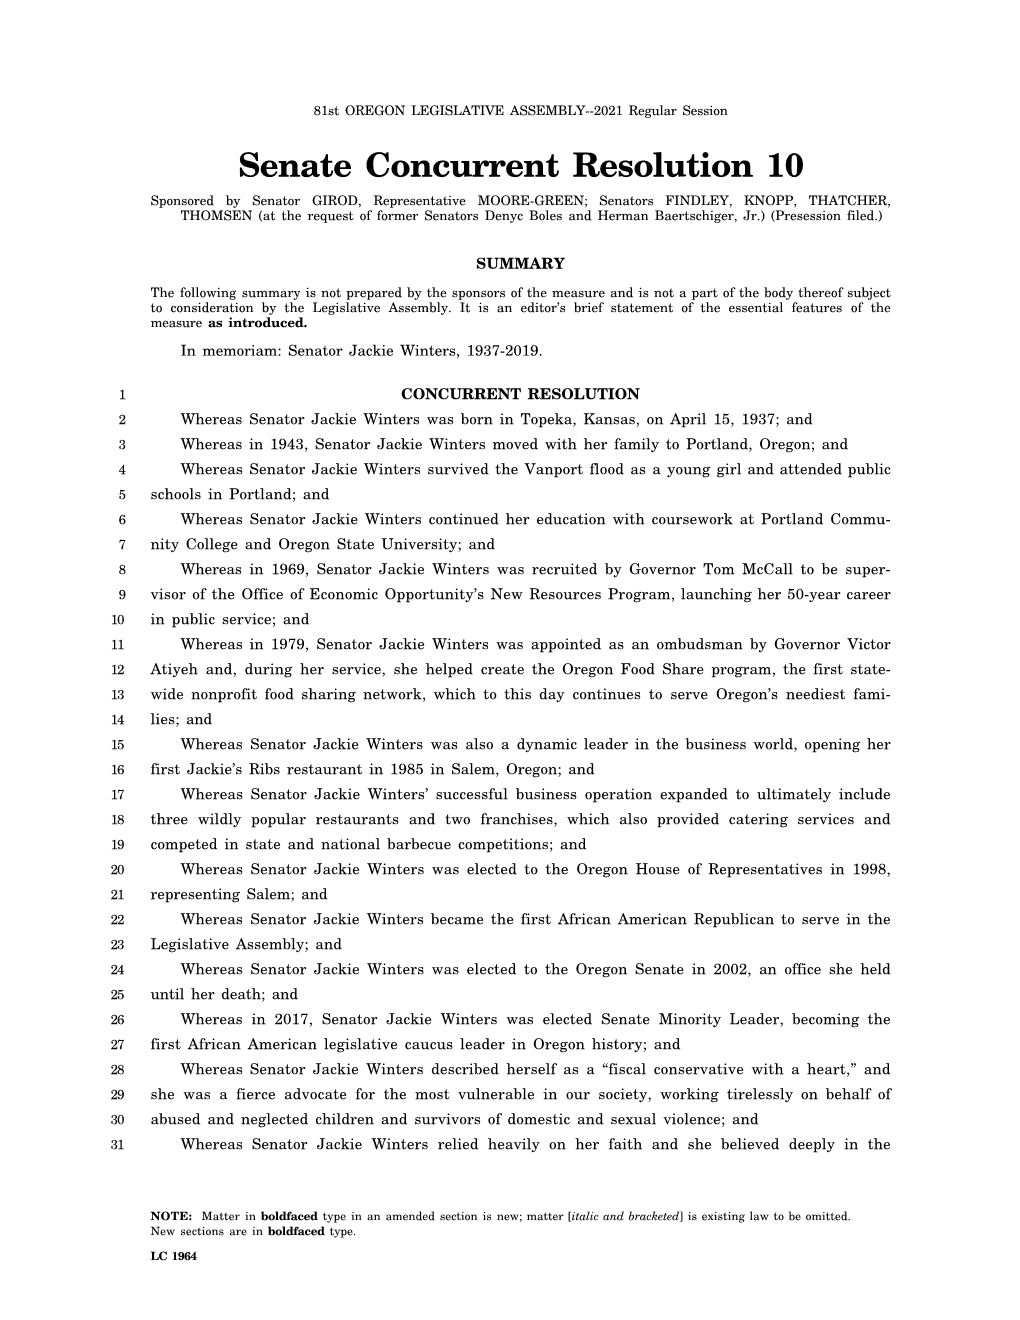 Senate Concurrent Resolution 10